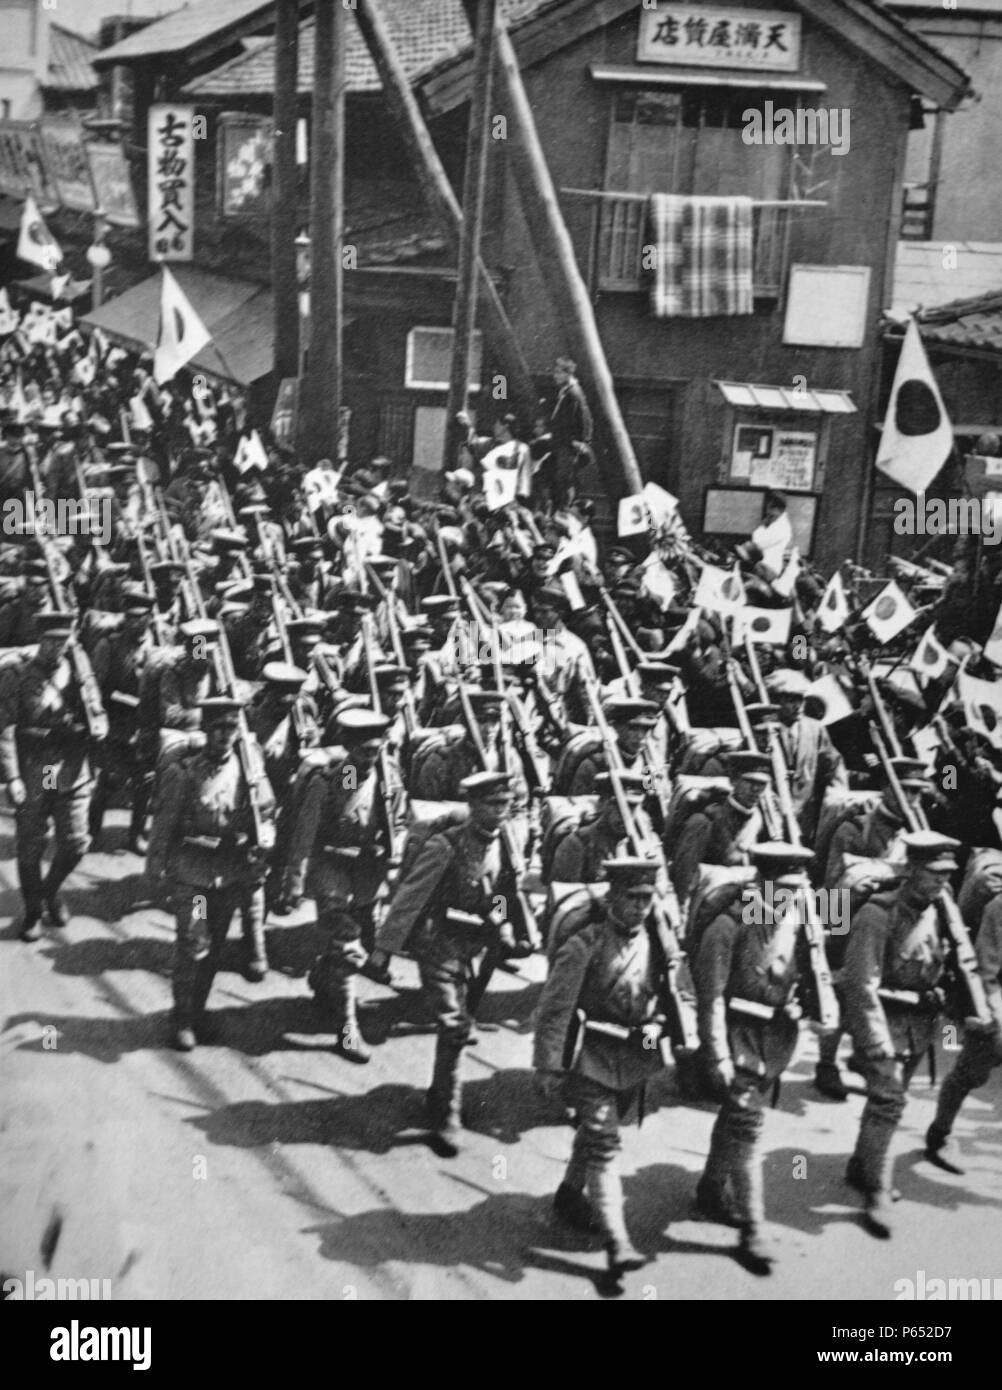 Feierliche Parade von japanischen Soldaten vor der Einschiffung der Mandschurei die Japanische Region China während des chinesisch-japanischen Krieges kontrolliert. Stockfoto